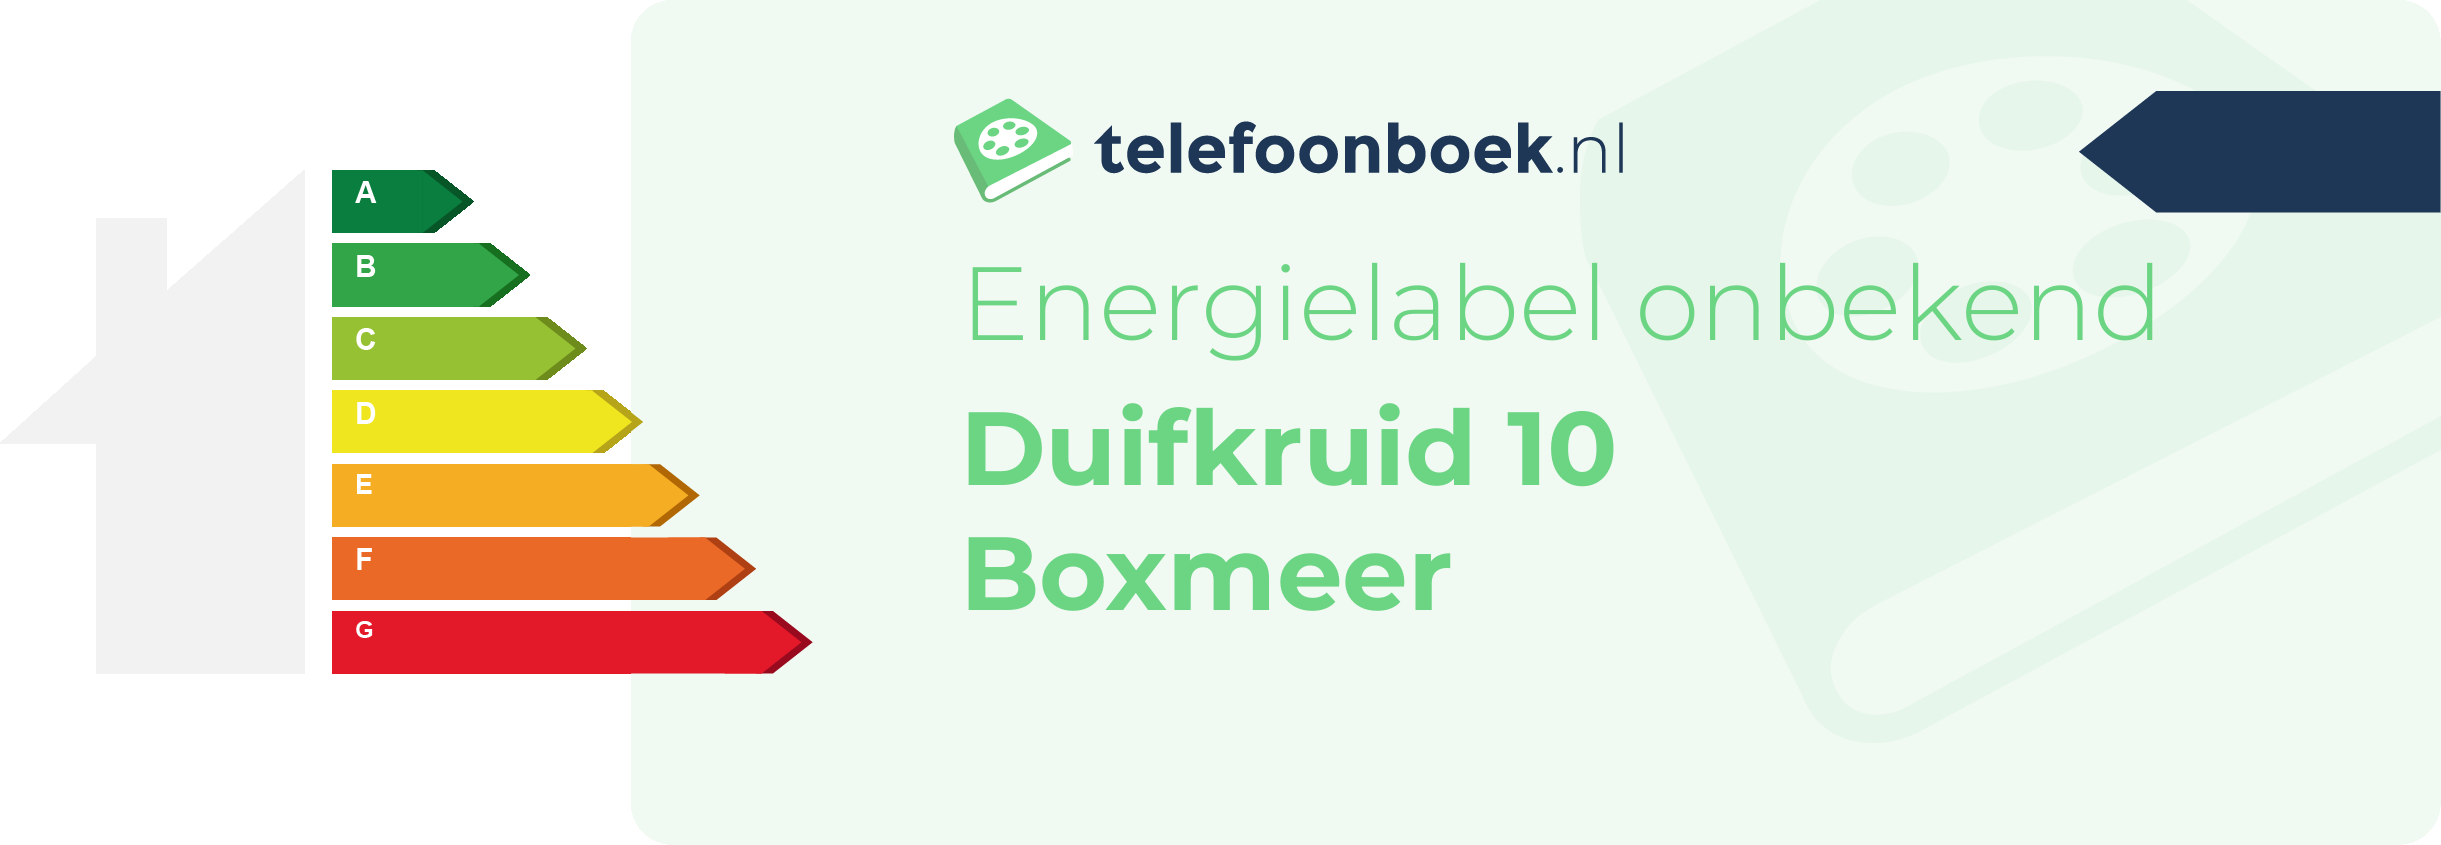 Energielabel Duifkruid 10 Boxmeer